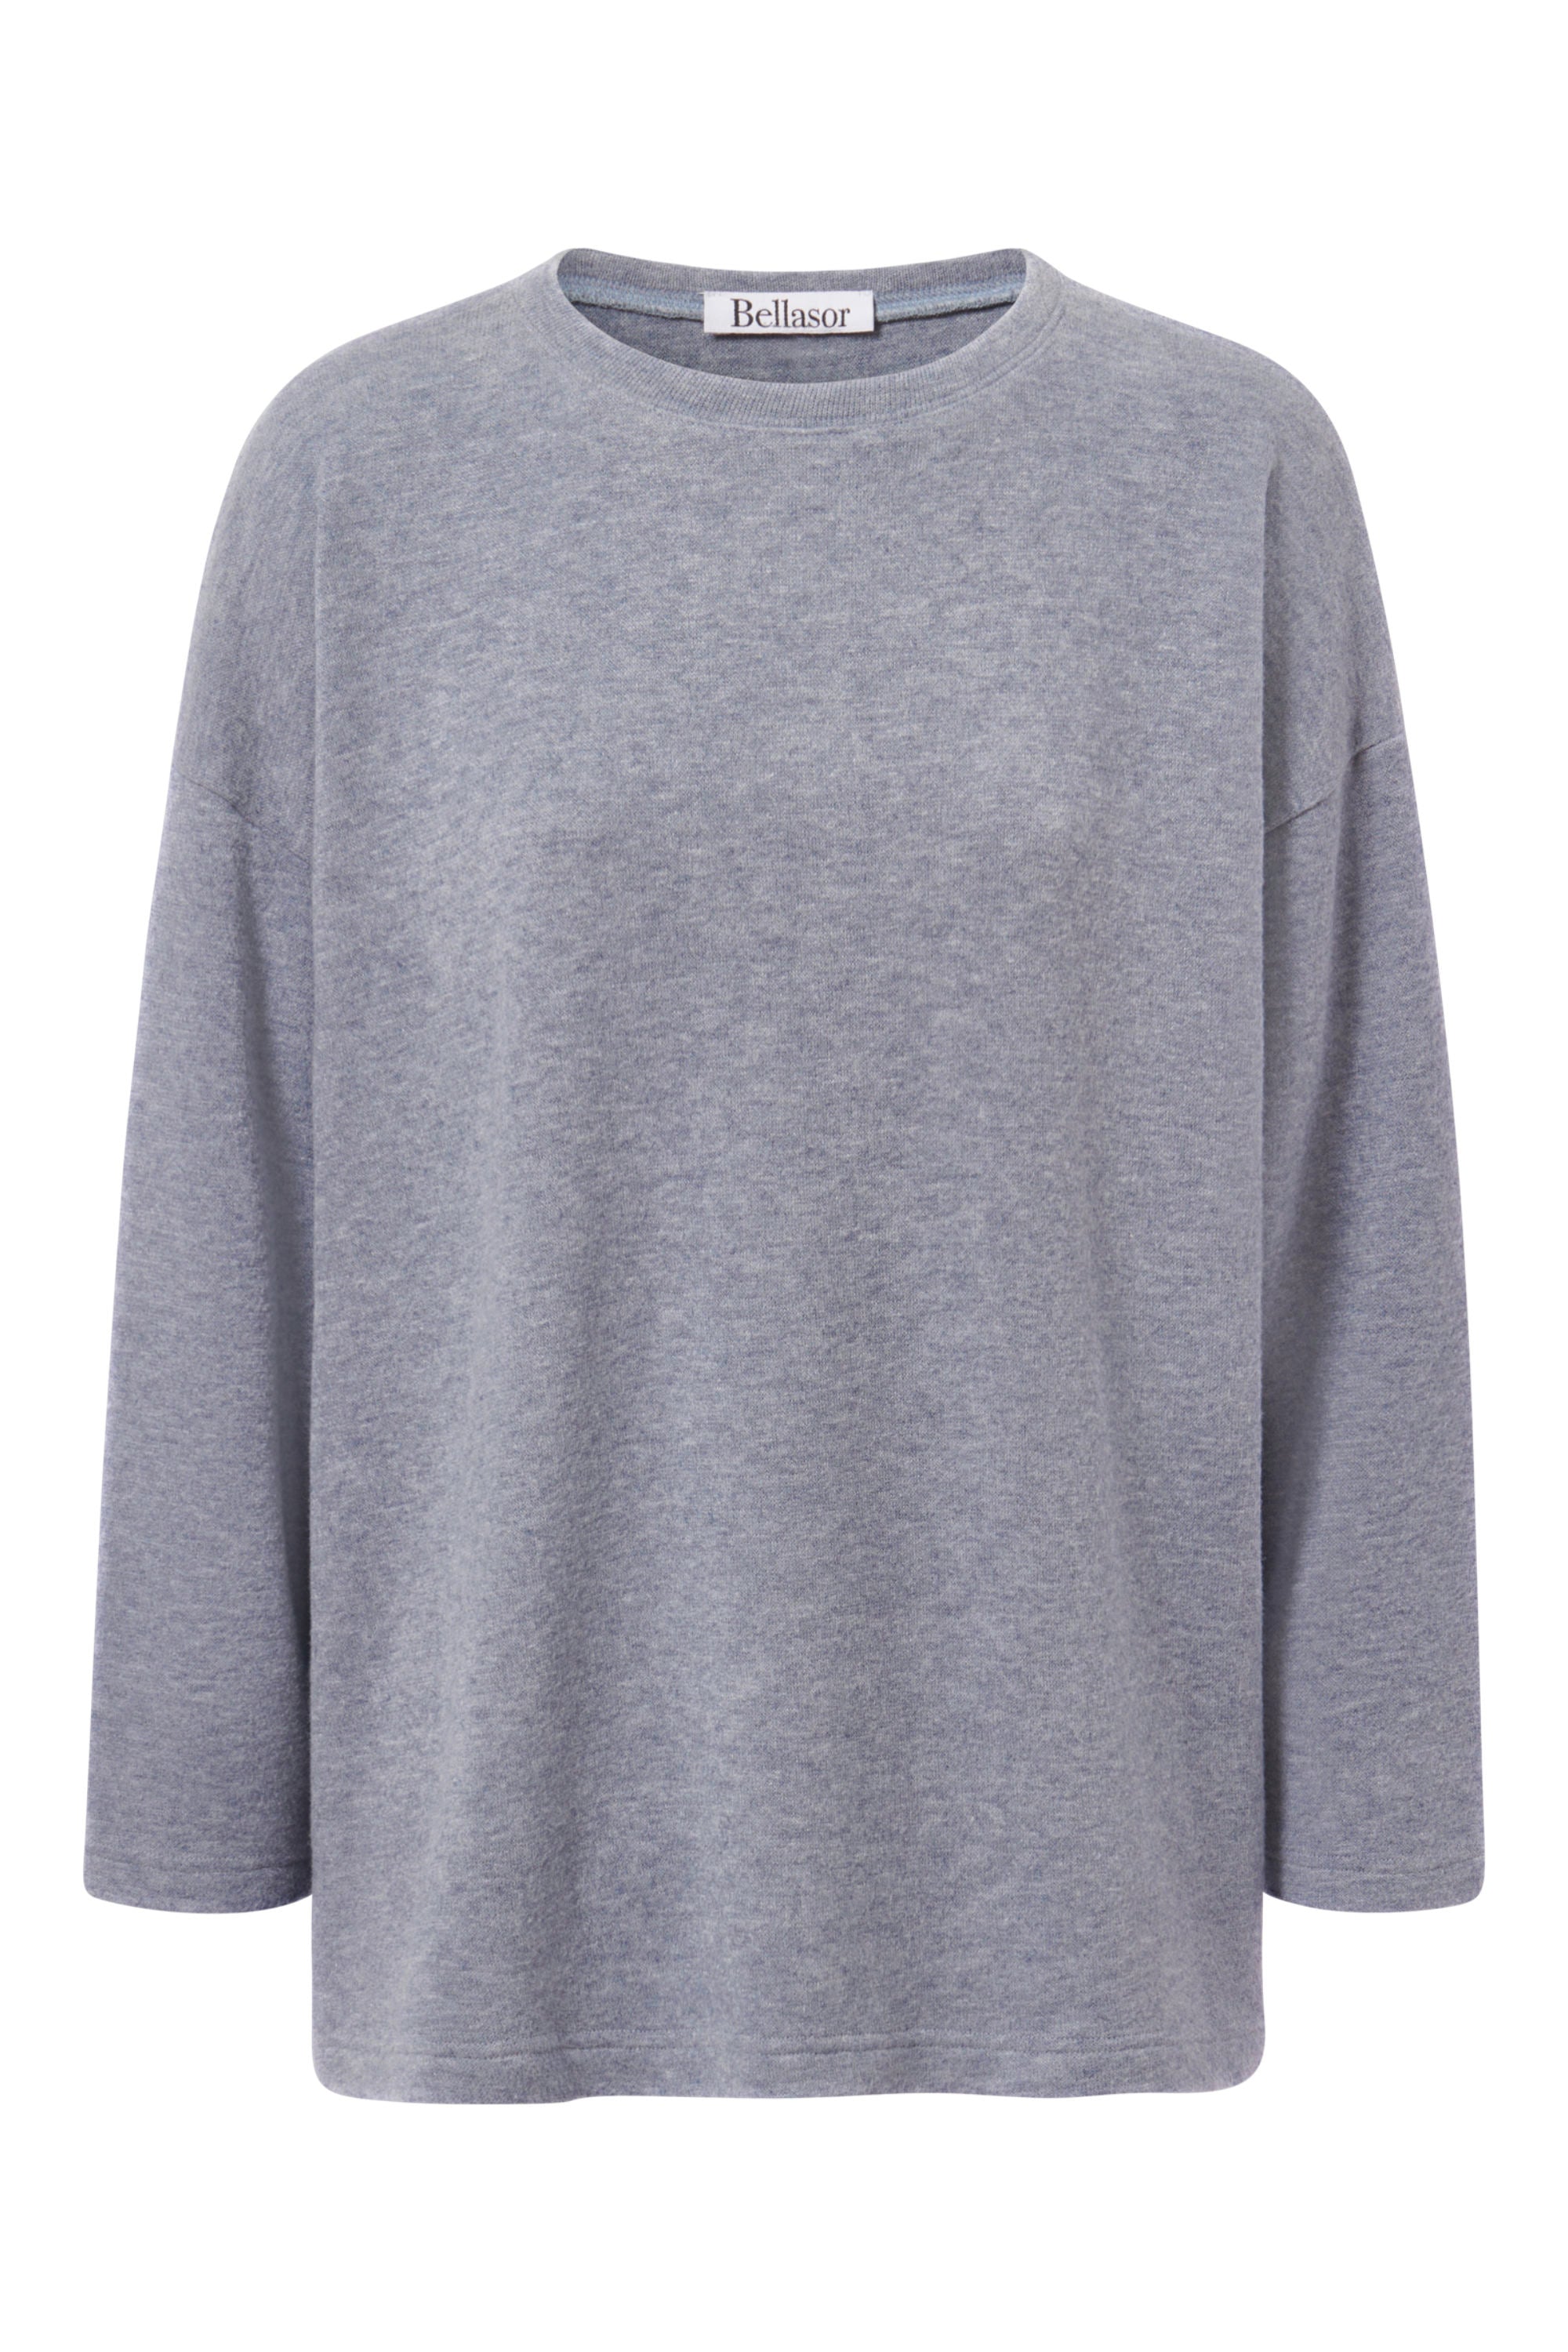 Ein hochwertiger Pullover für Damen in der Farbe grau.